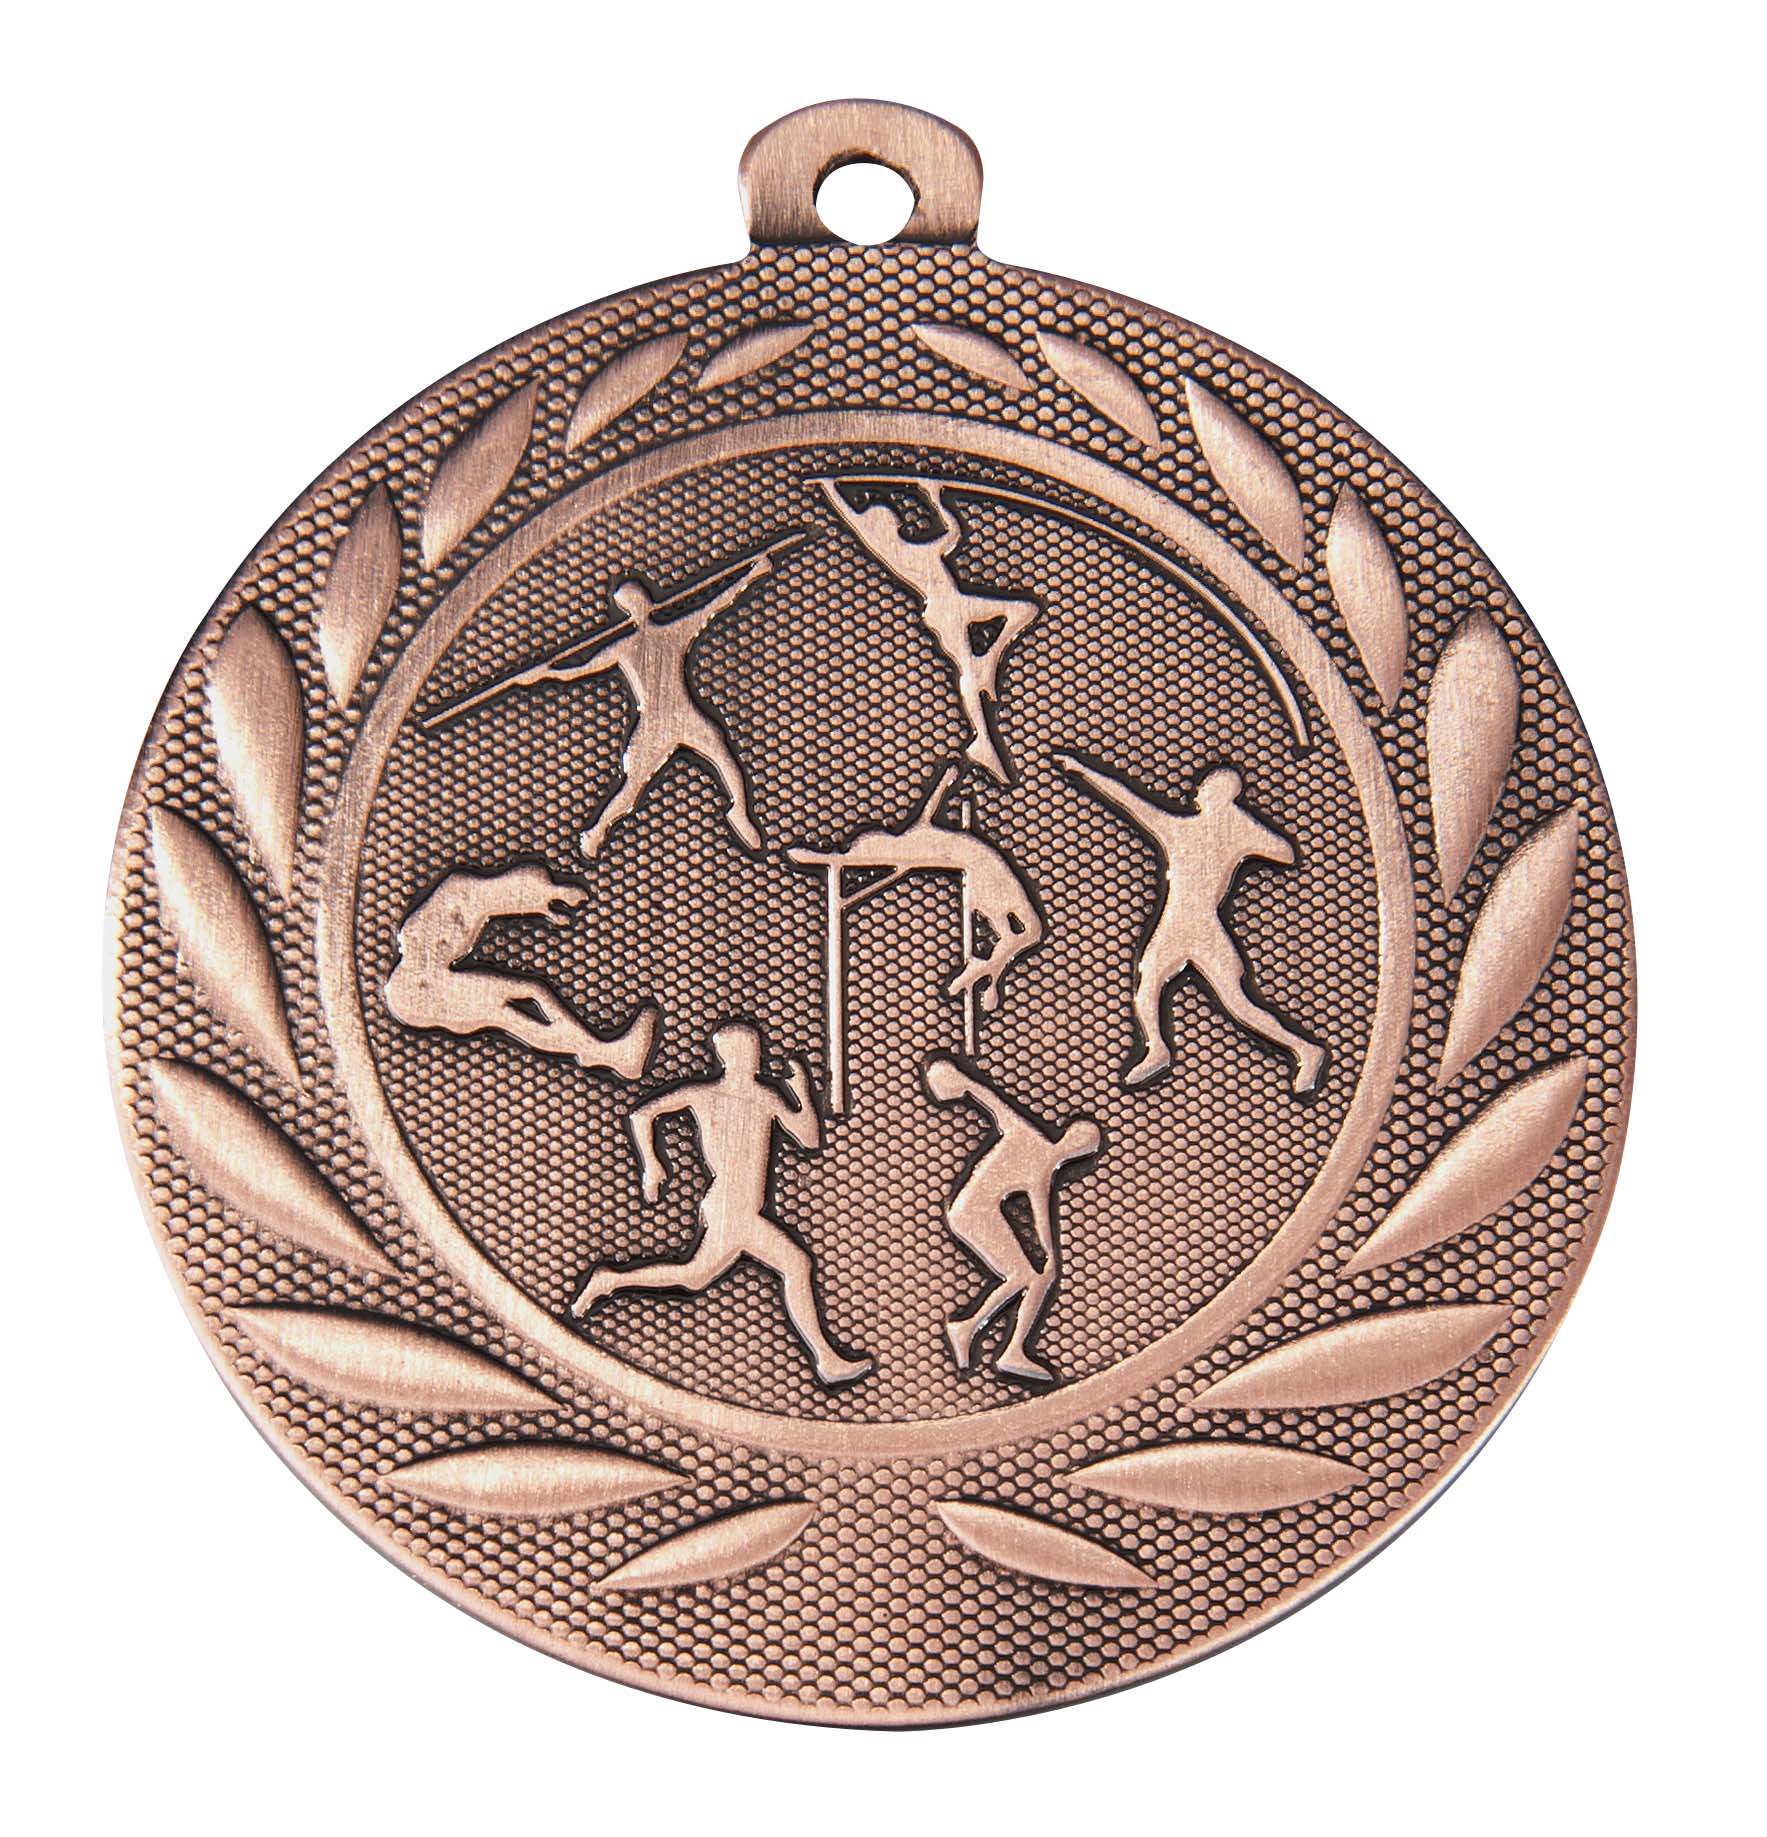 Leichtathletik-Medaille DI15000K inkl. Band und Beschriftung Bronze Unmontiert